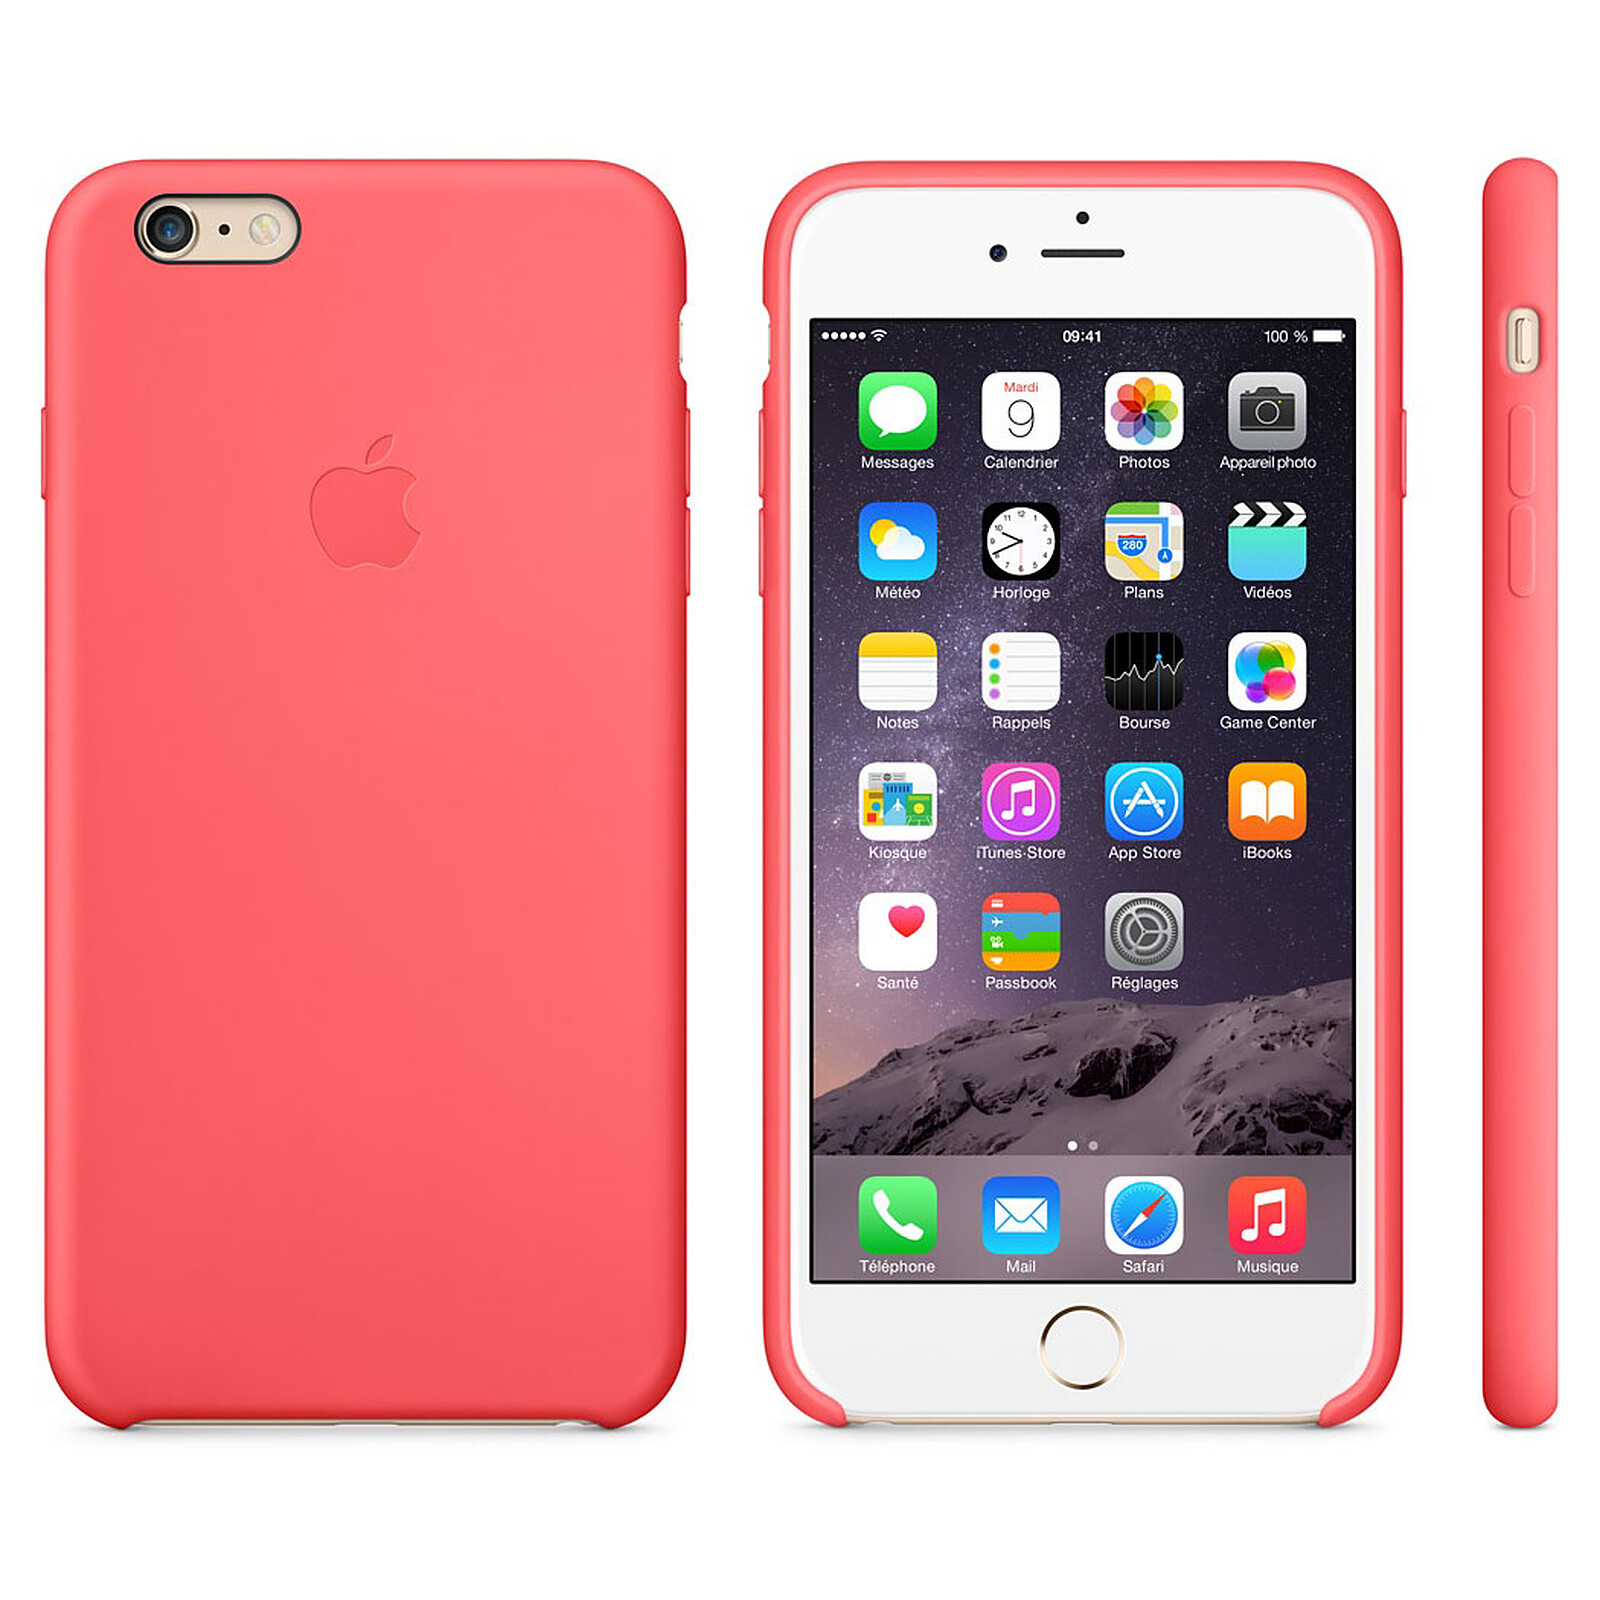 Айфон телефон покупка. Apple iphone 6. Apple iphone 6s Plus. Iphone 6 и 6 Plus. Apple Leather Case iphone 6s Plus.